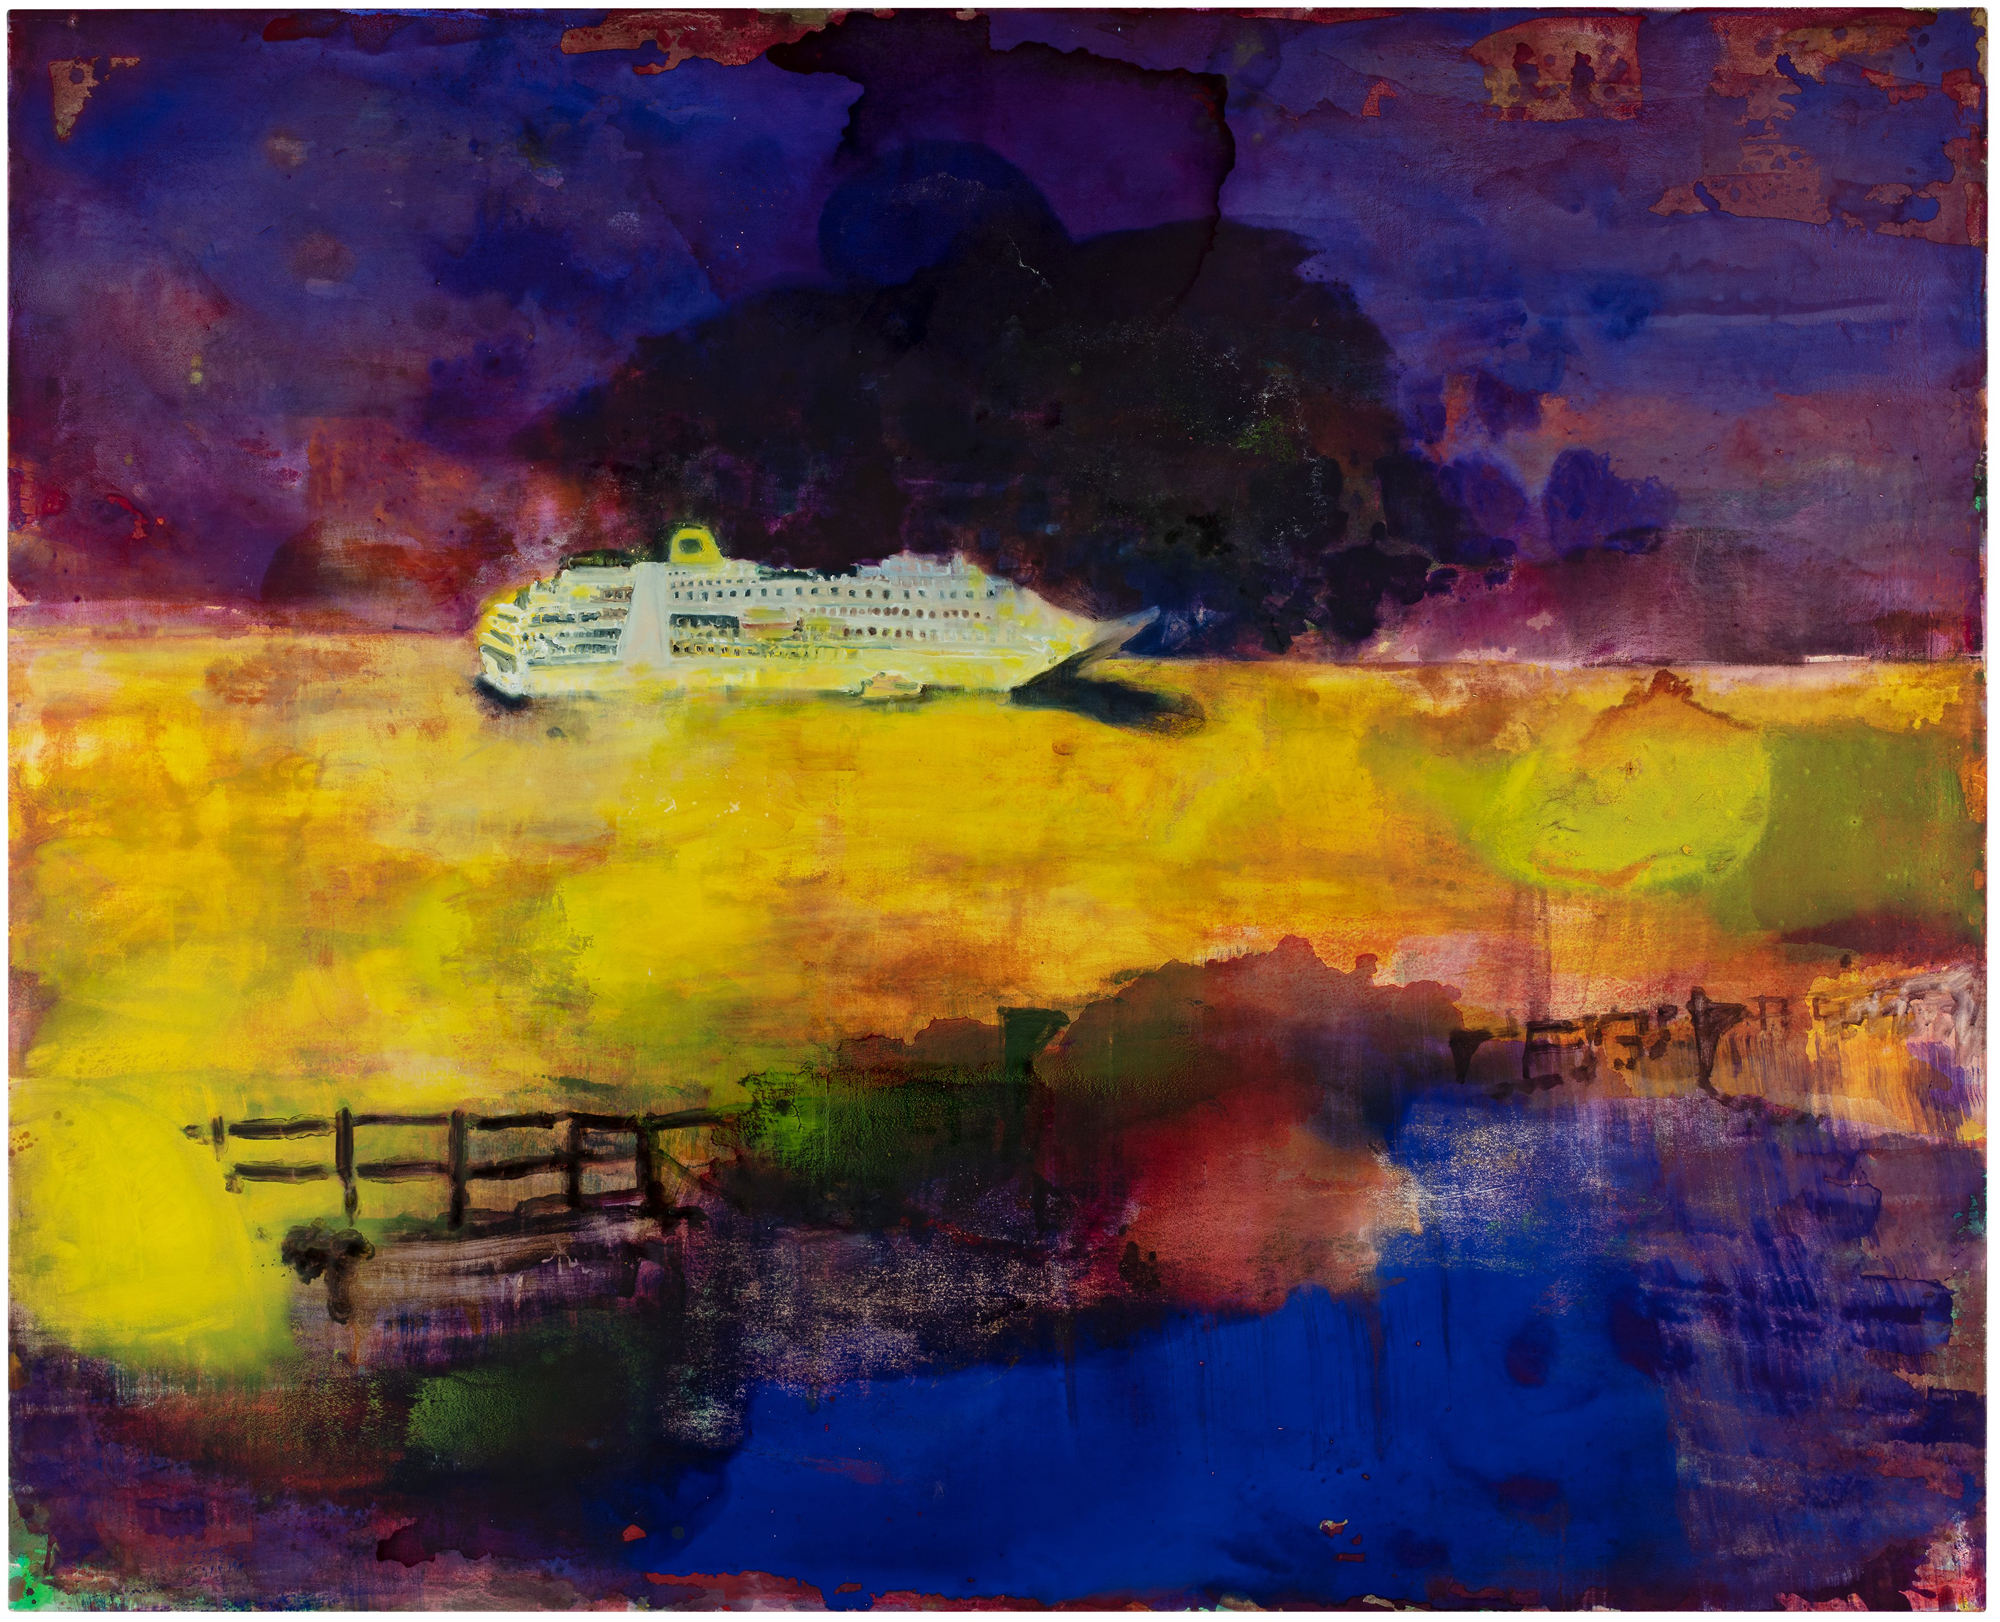 Titre de l'illustration: Rachel Lumsden, Landslide II, 2020. Description: Image d’une peinture représentant au premier plan une barrière brune et une zone bleue, avec une croisière blanche sur une mer jaune au deuxième plan devant un ciel violet foncé.